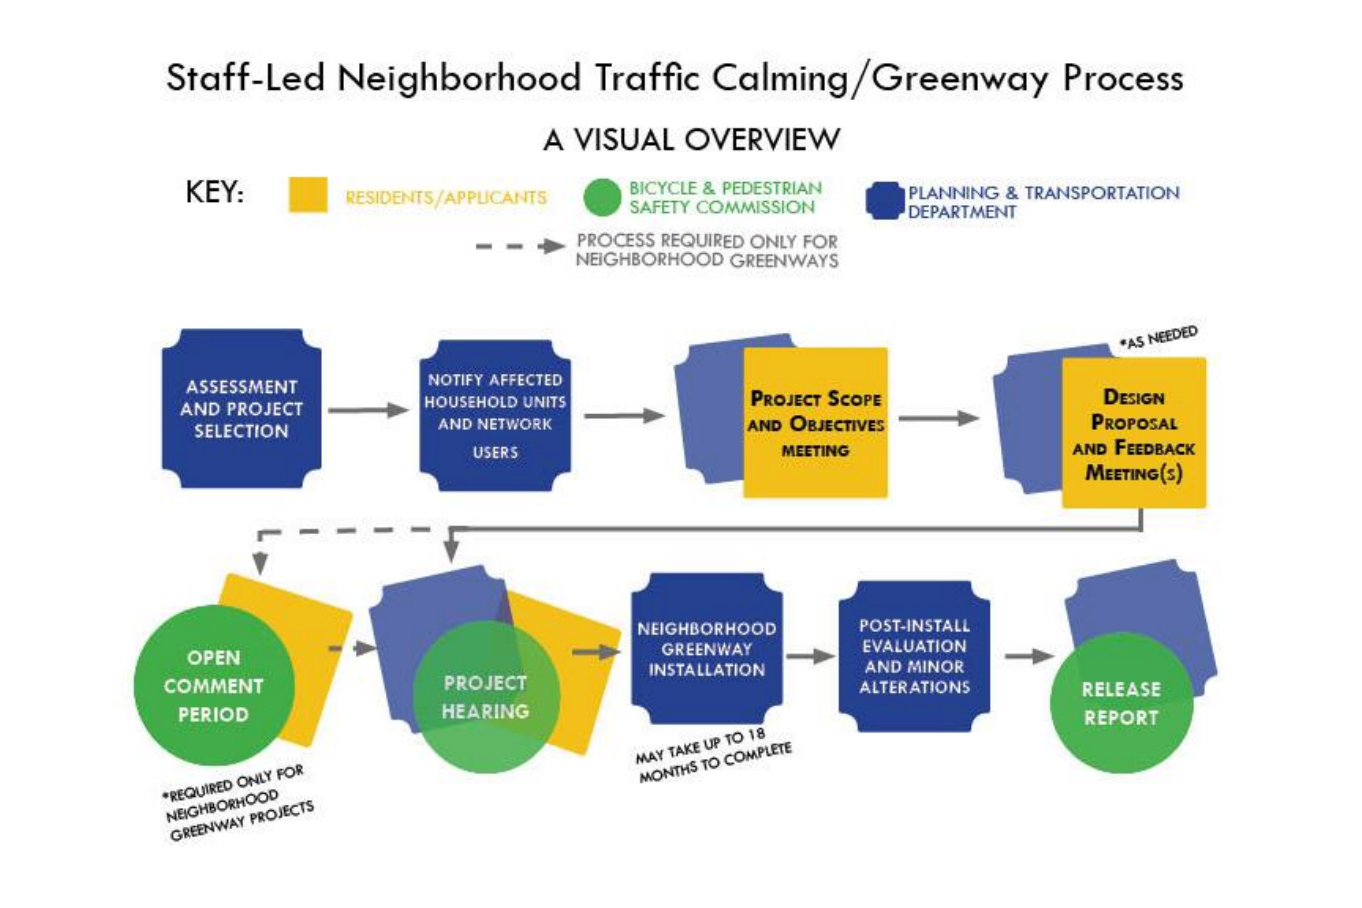 Staff-led traffic calming flow chart